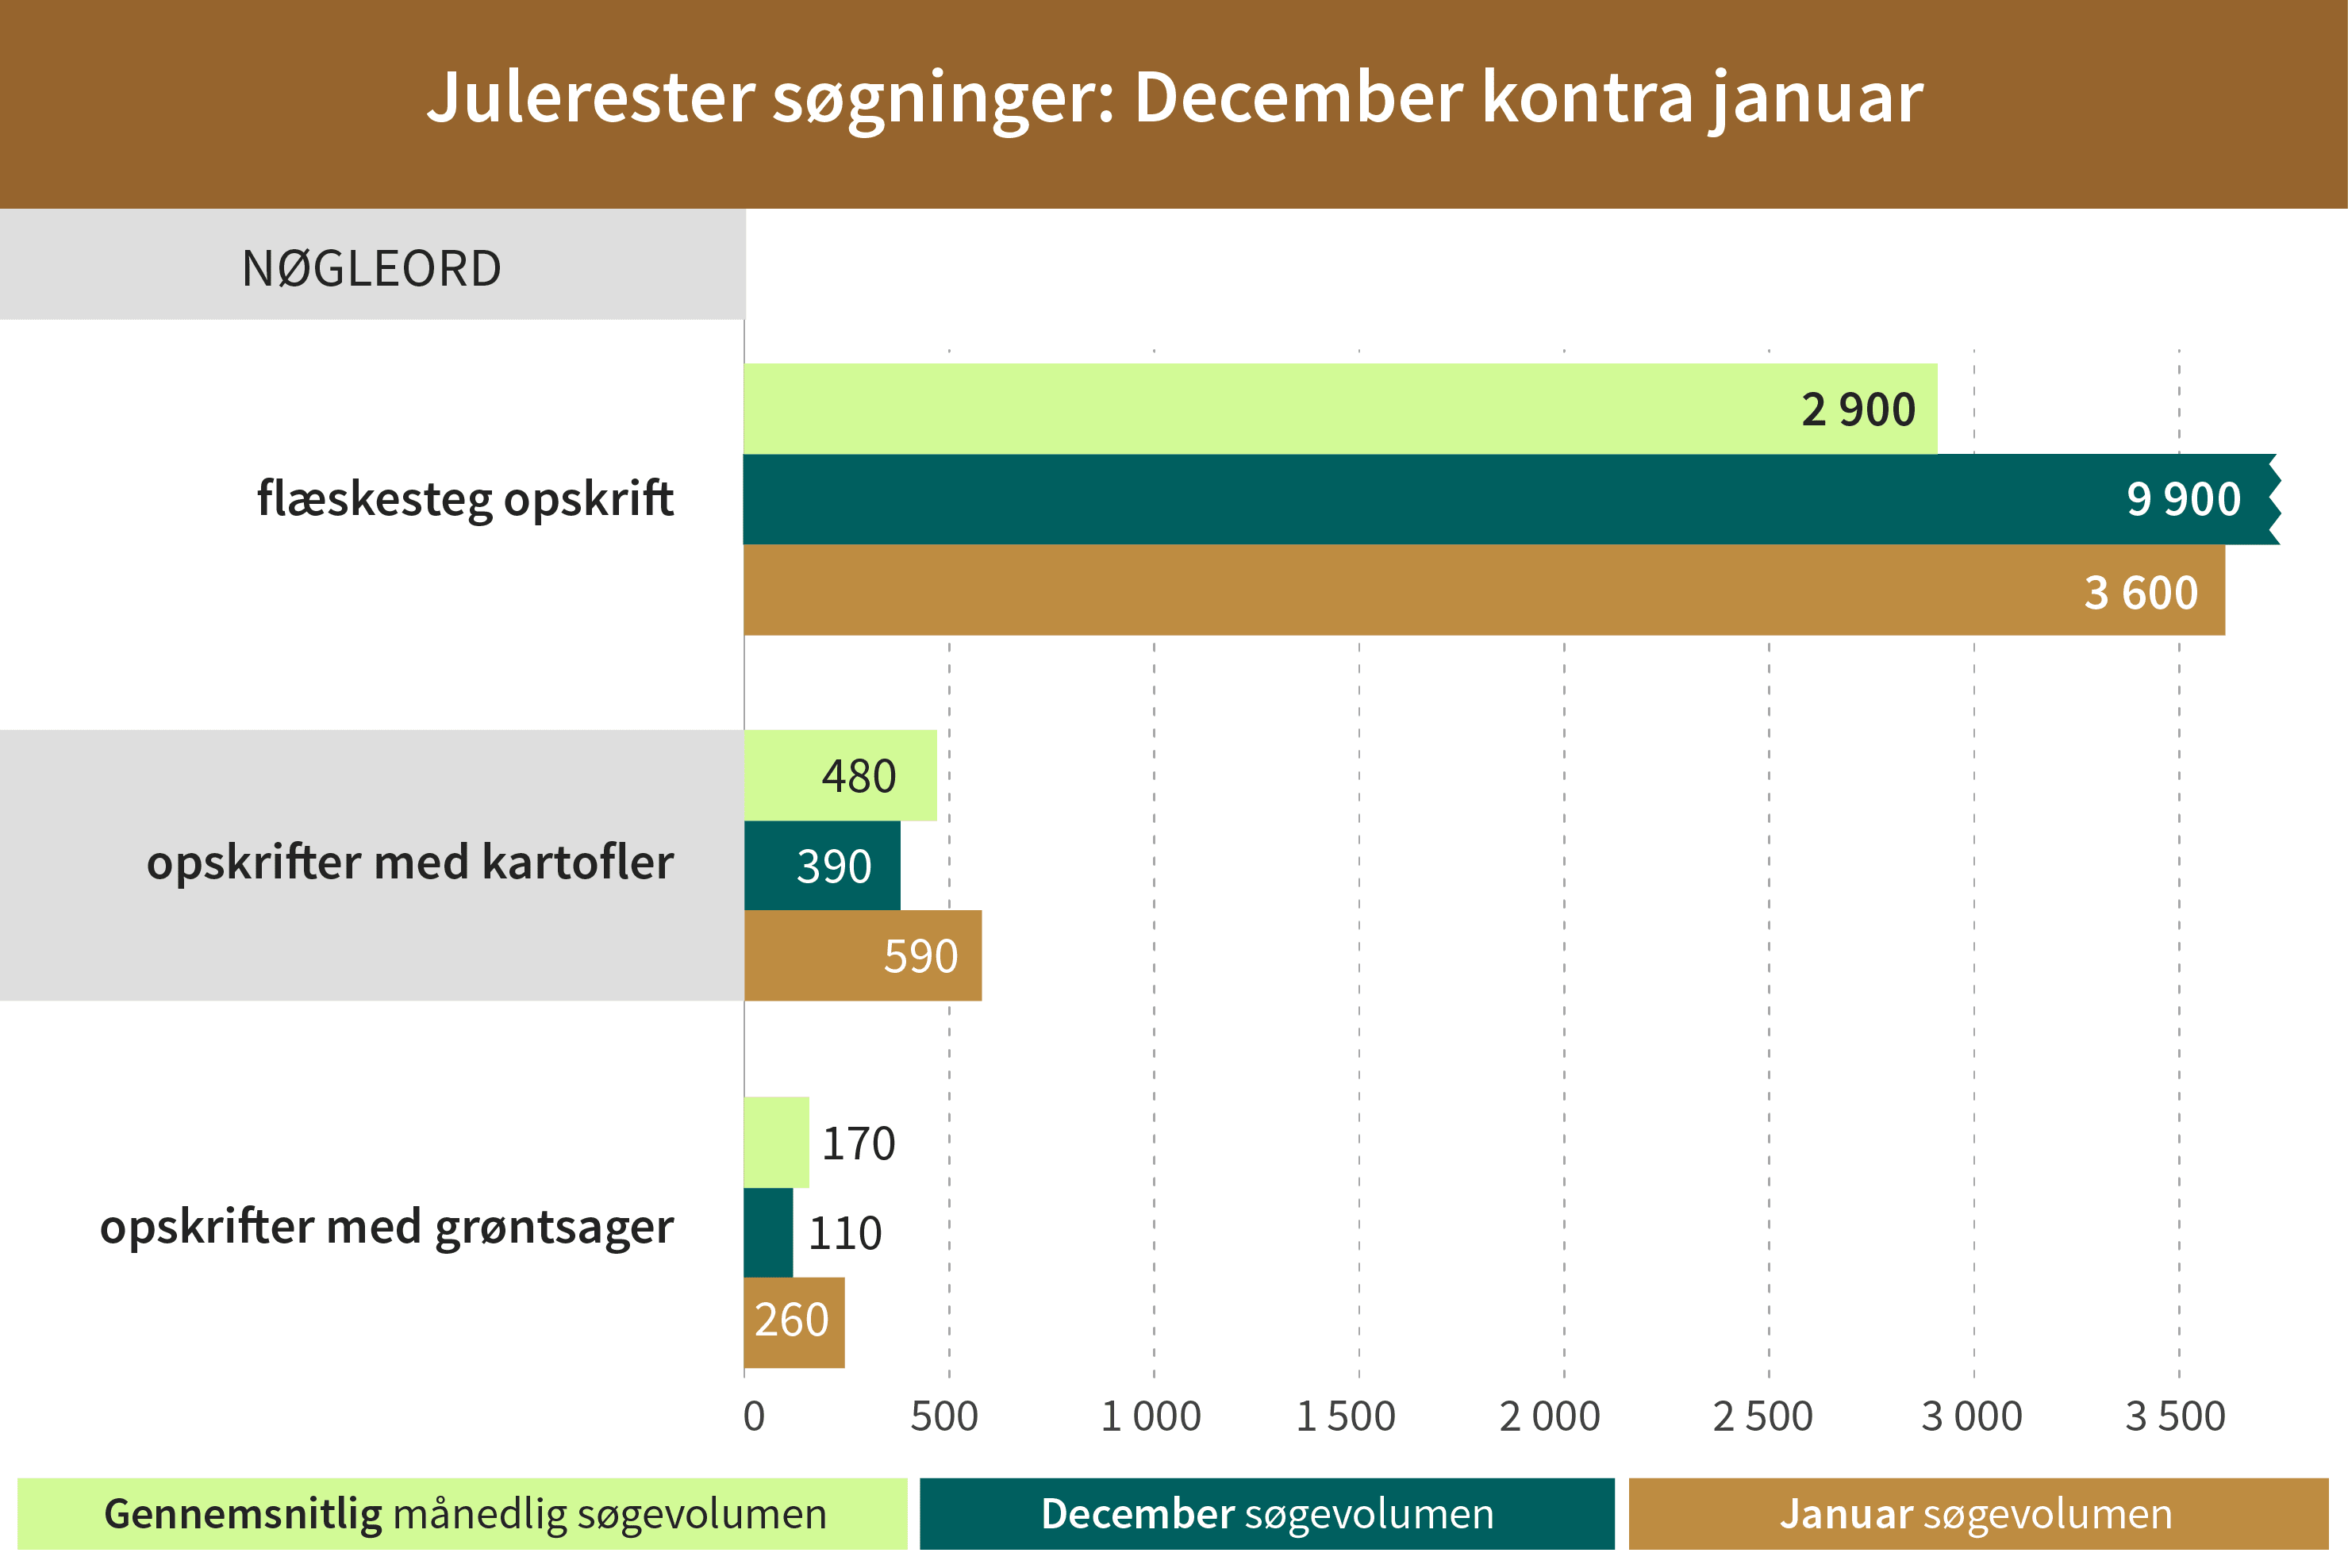 Danmark opbruger deres julerester helt ind i januar 